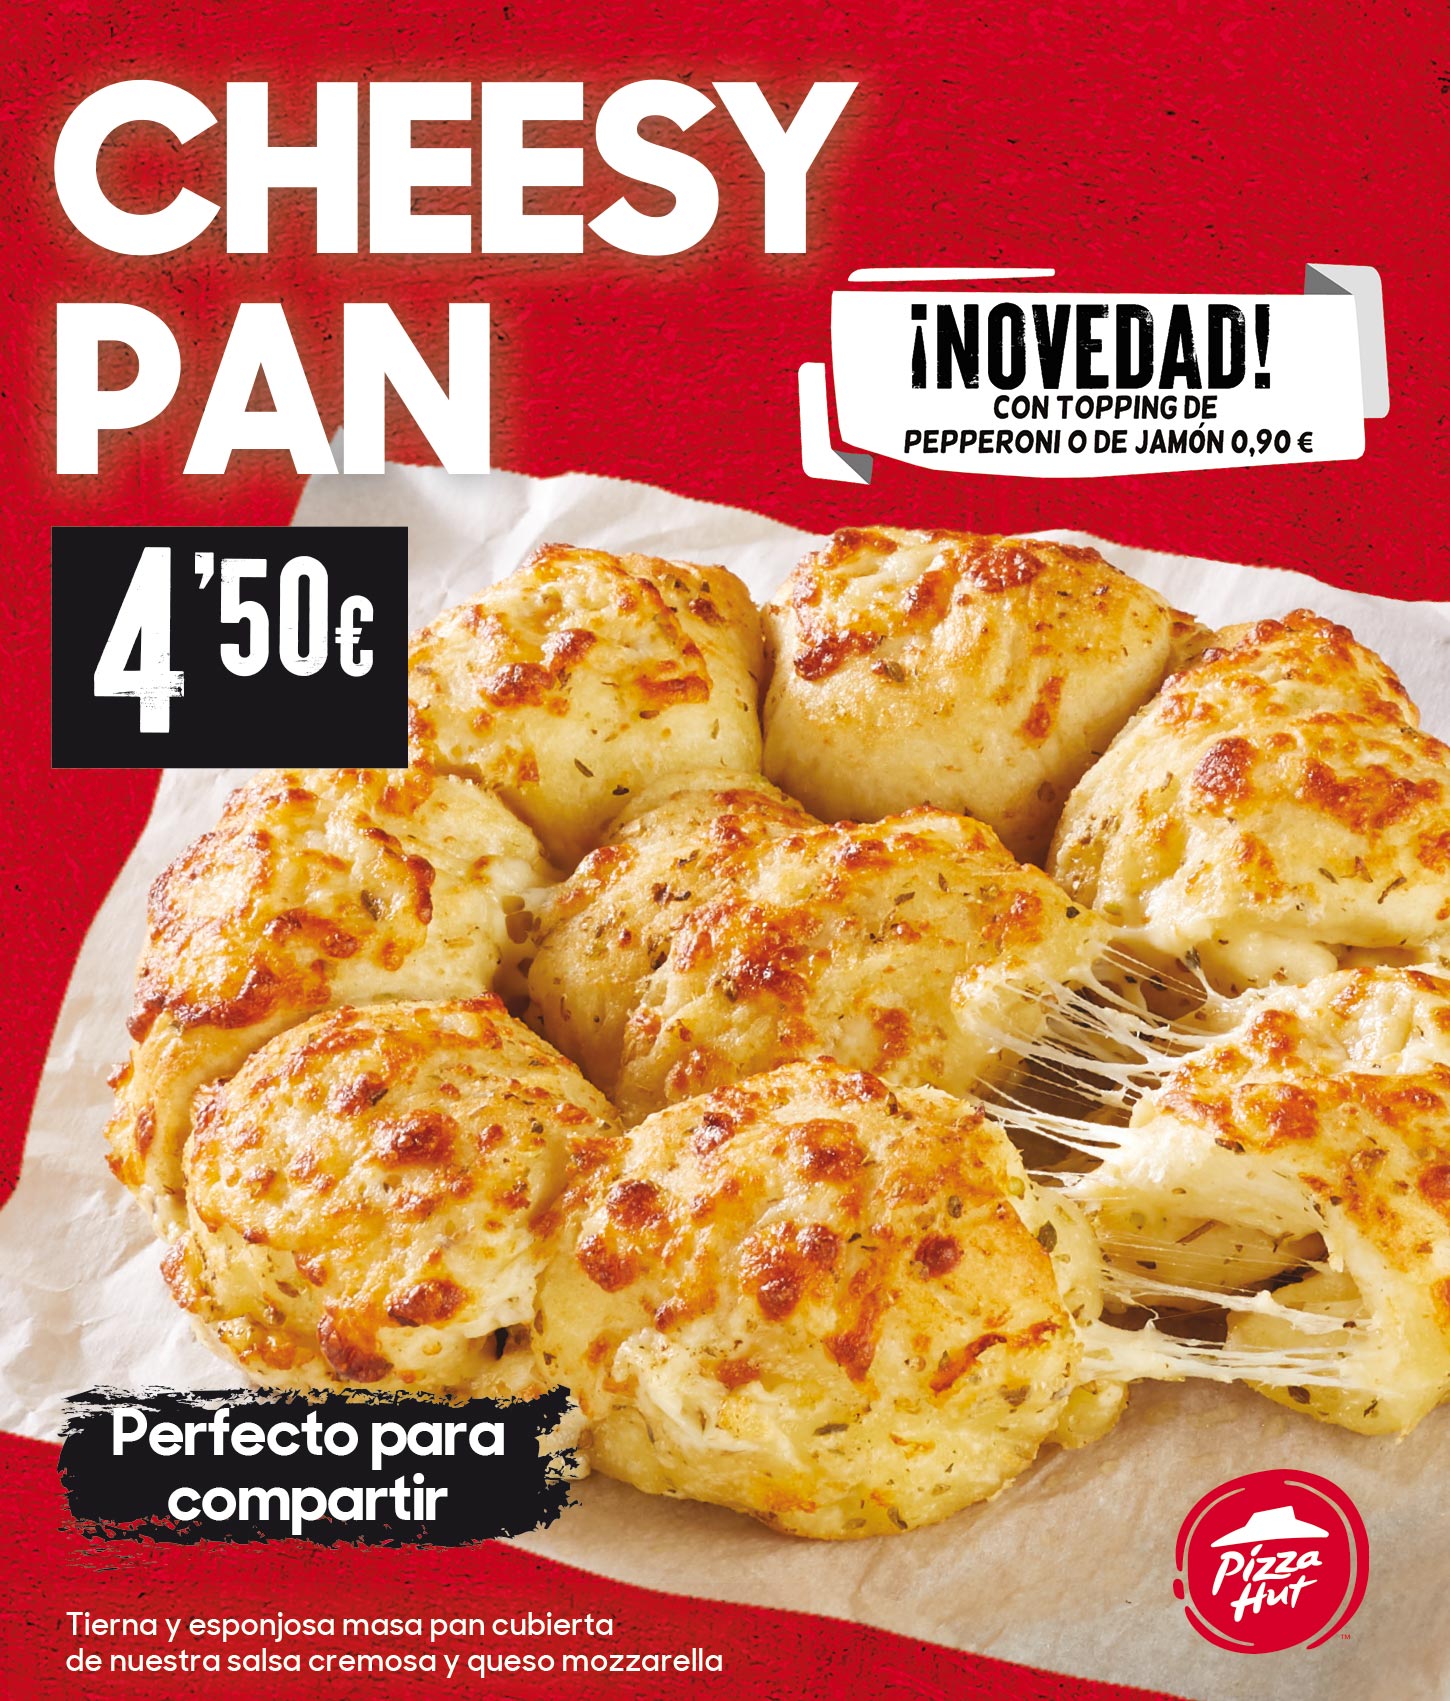 Cheesy Pan. Pizza Hut Vigo